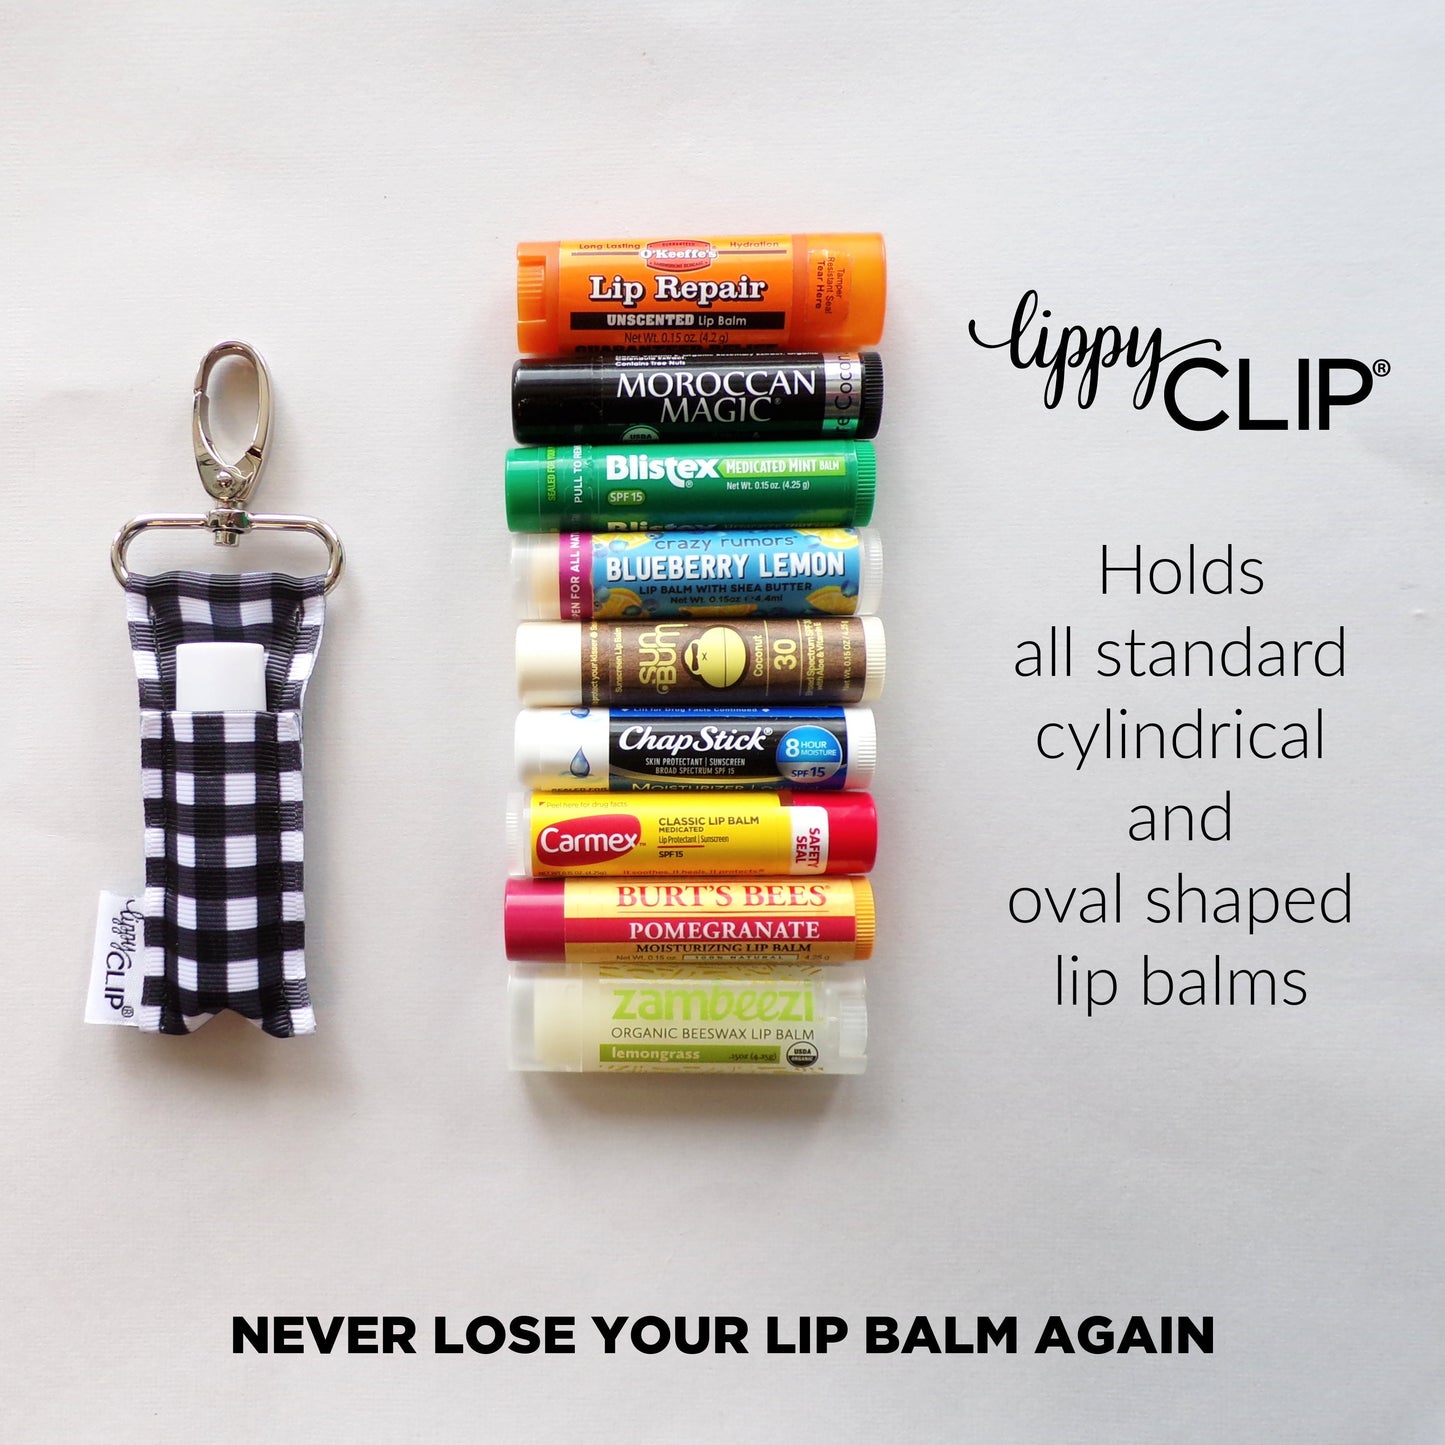 Floral Hedgehog LippyClip® Lip Balm Holder